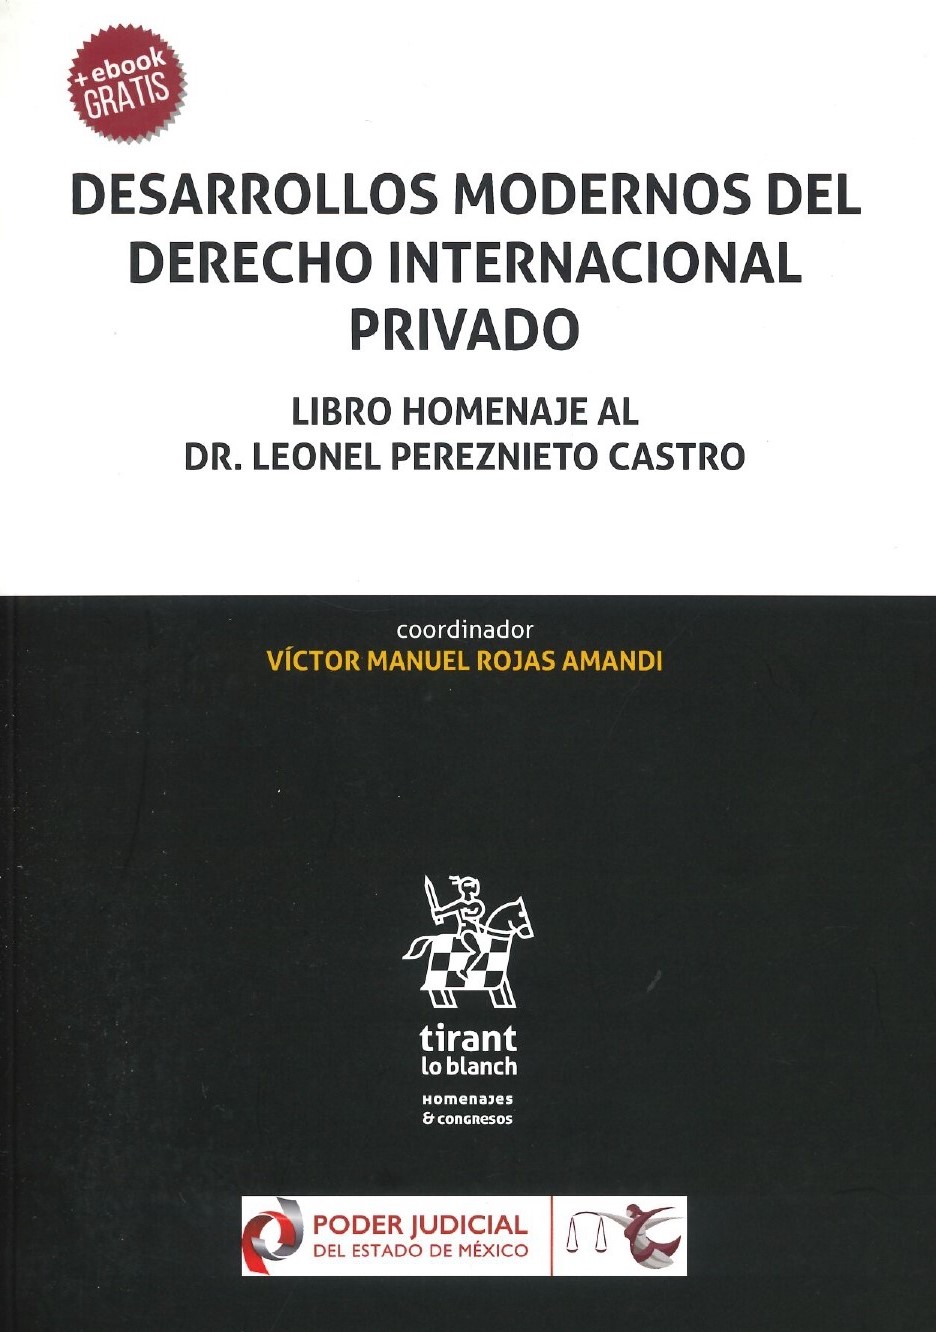 Imagen de portada del libro Desarrollos modernos del Derecho internacional privado